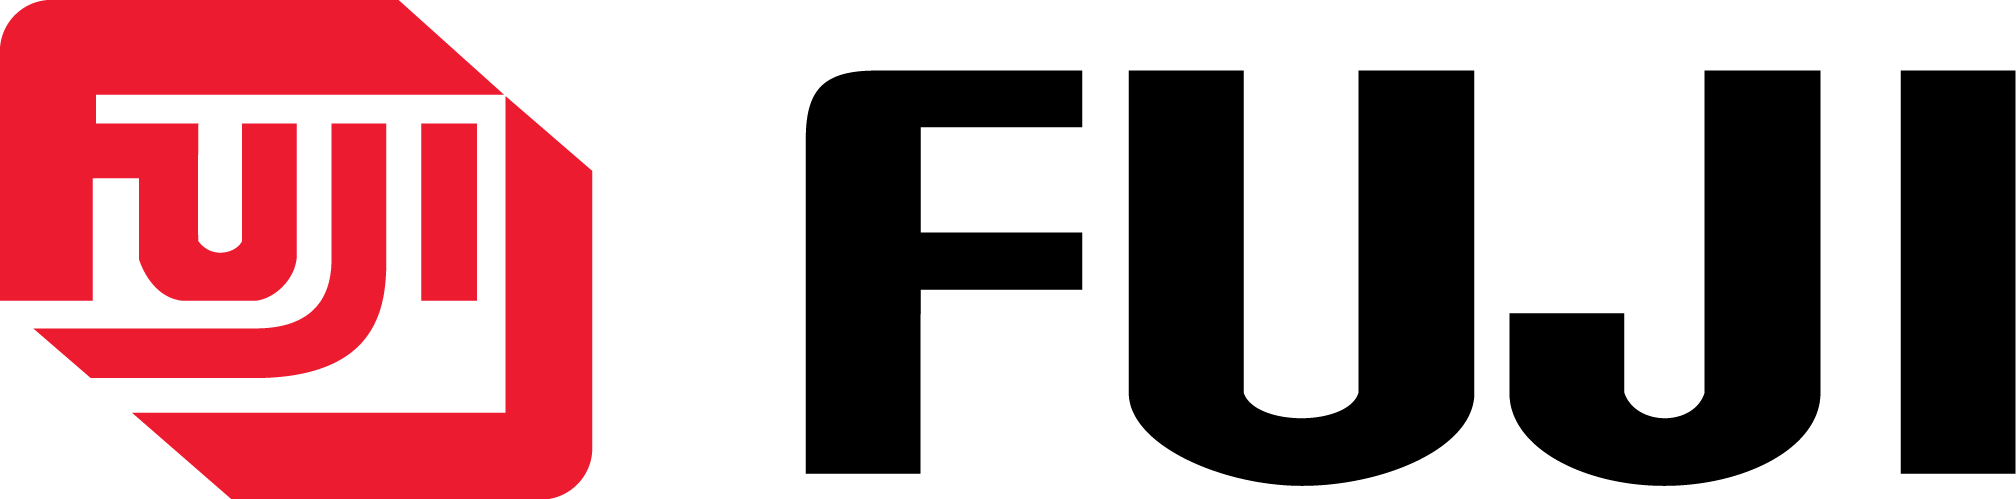 Fuji Logo - Logos. Logos, Logo branding, Fuji